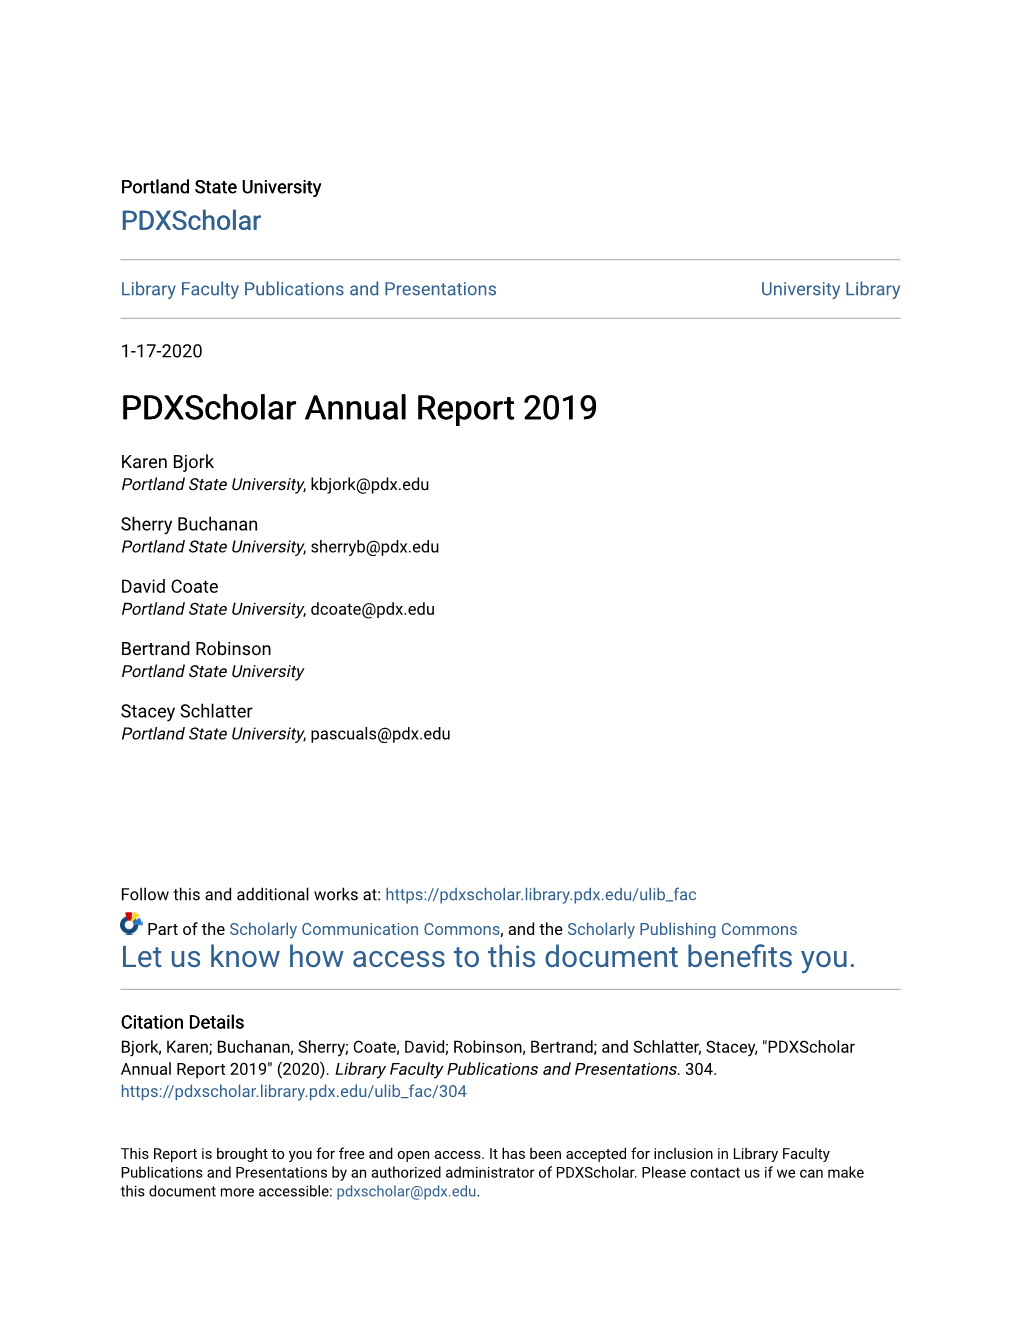 Pdxscholar Annual Report 2019